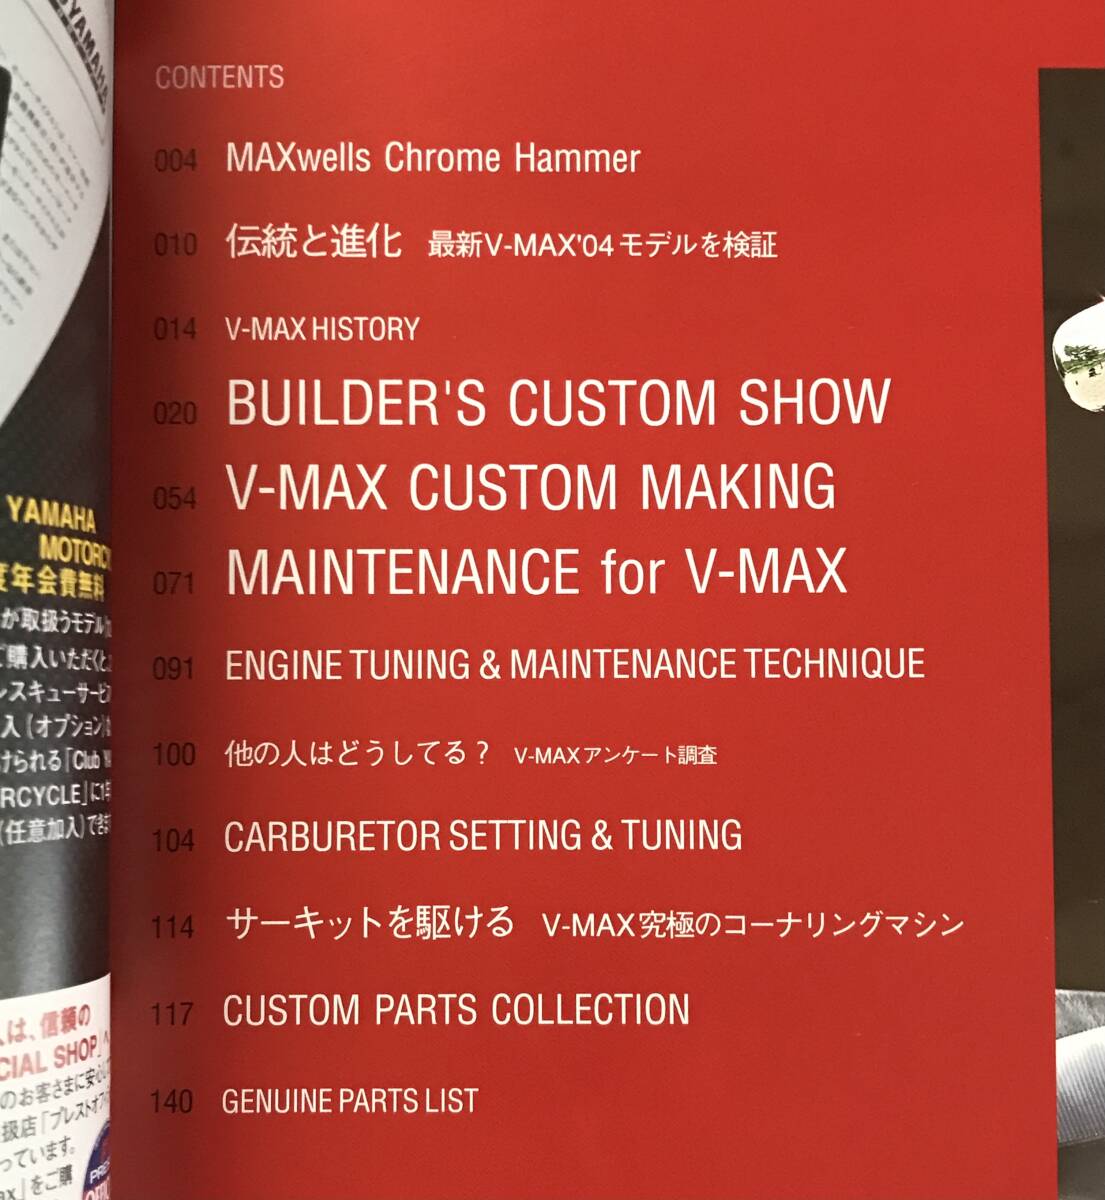 YAMAHA V-MAX custom & техническое обслуживание поиск : Yamaha VMAX 1200 список запасных частей капитальный ремонт настраиваемый каталог сервисная книжка оригинальный детали 